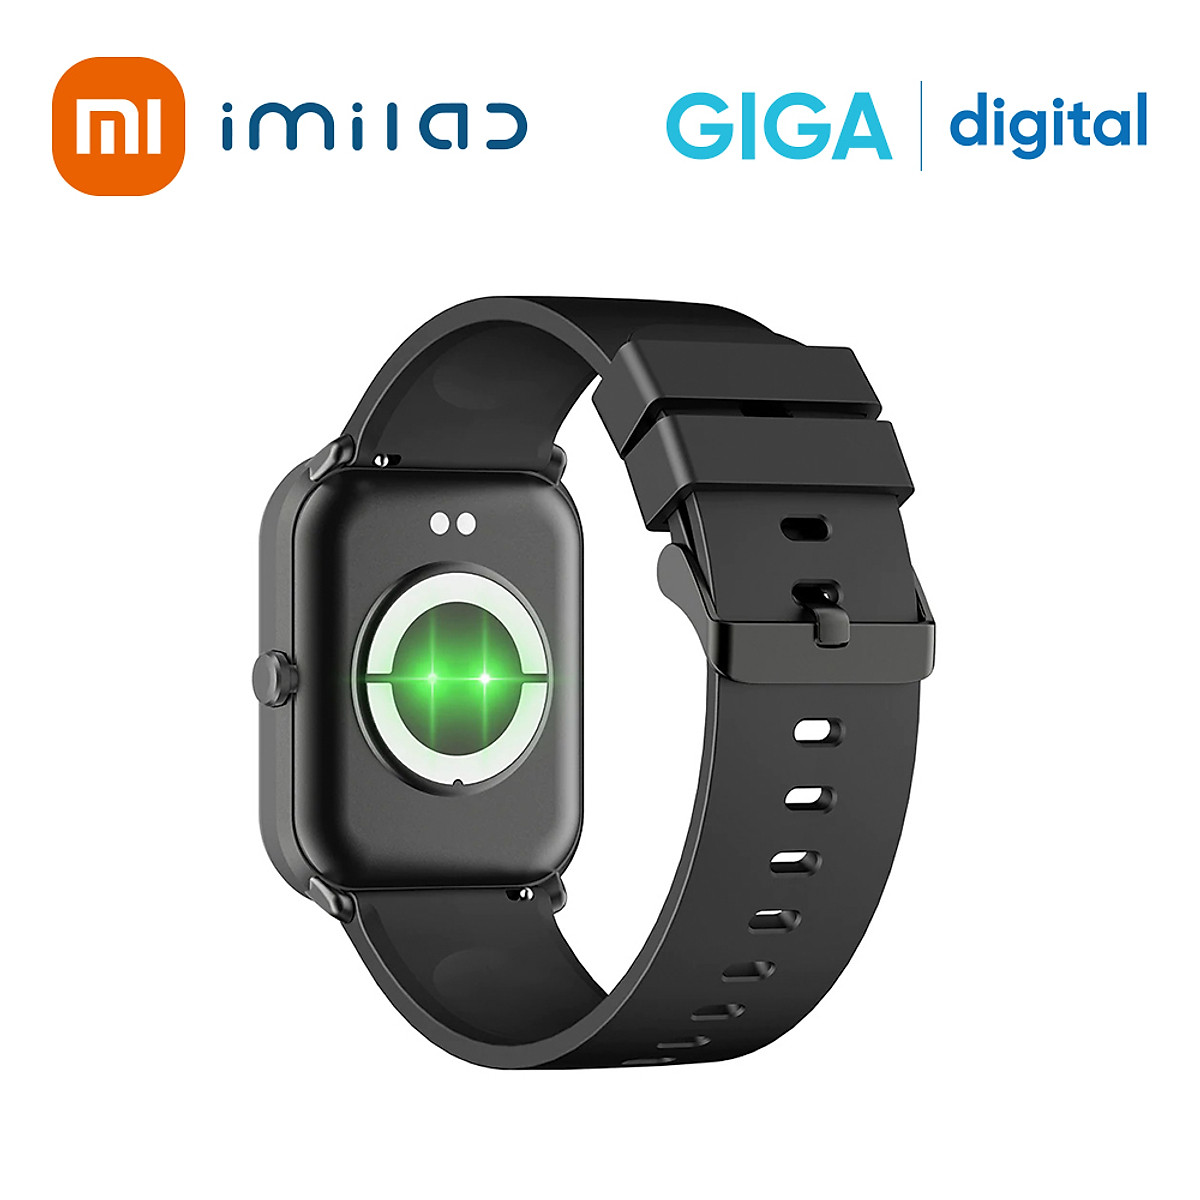 Đồng hồ thông minh IMILAB W01 Fitness Smart Watch Hàng Chính Hãng